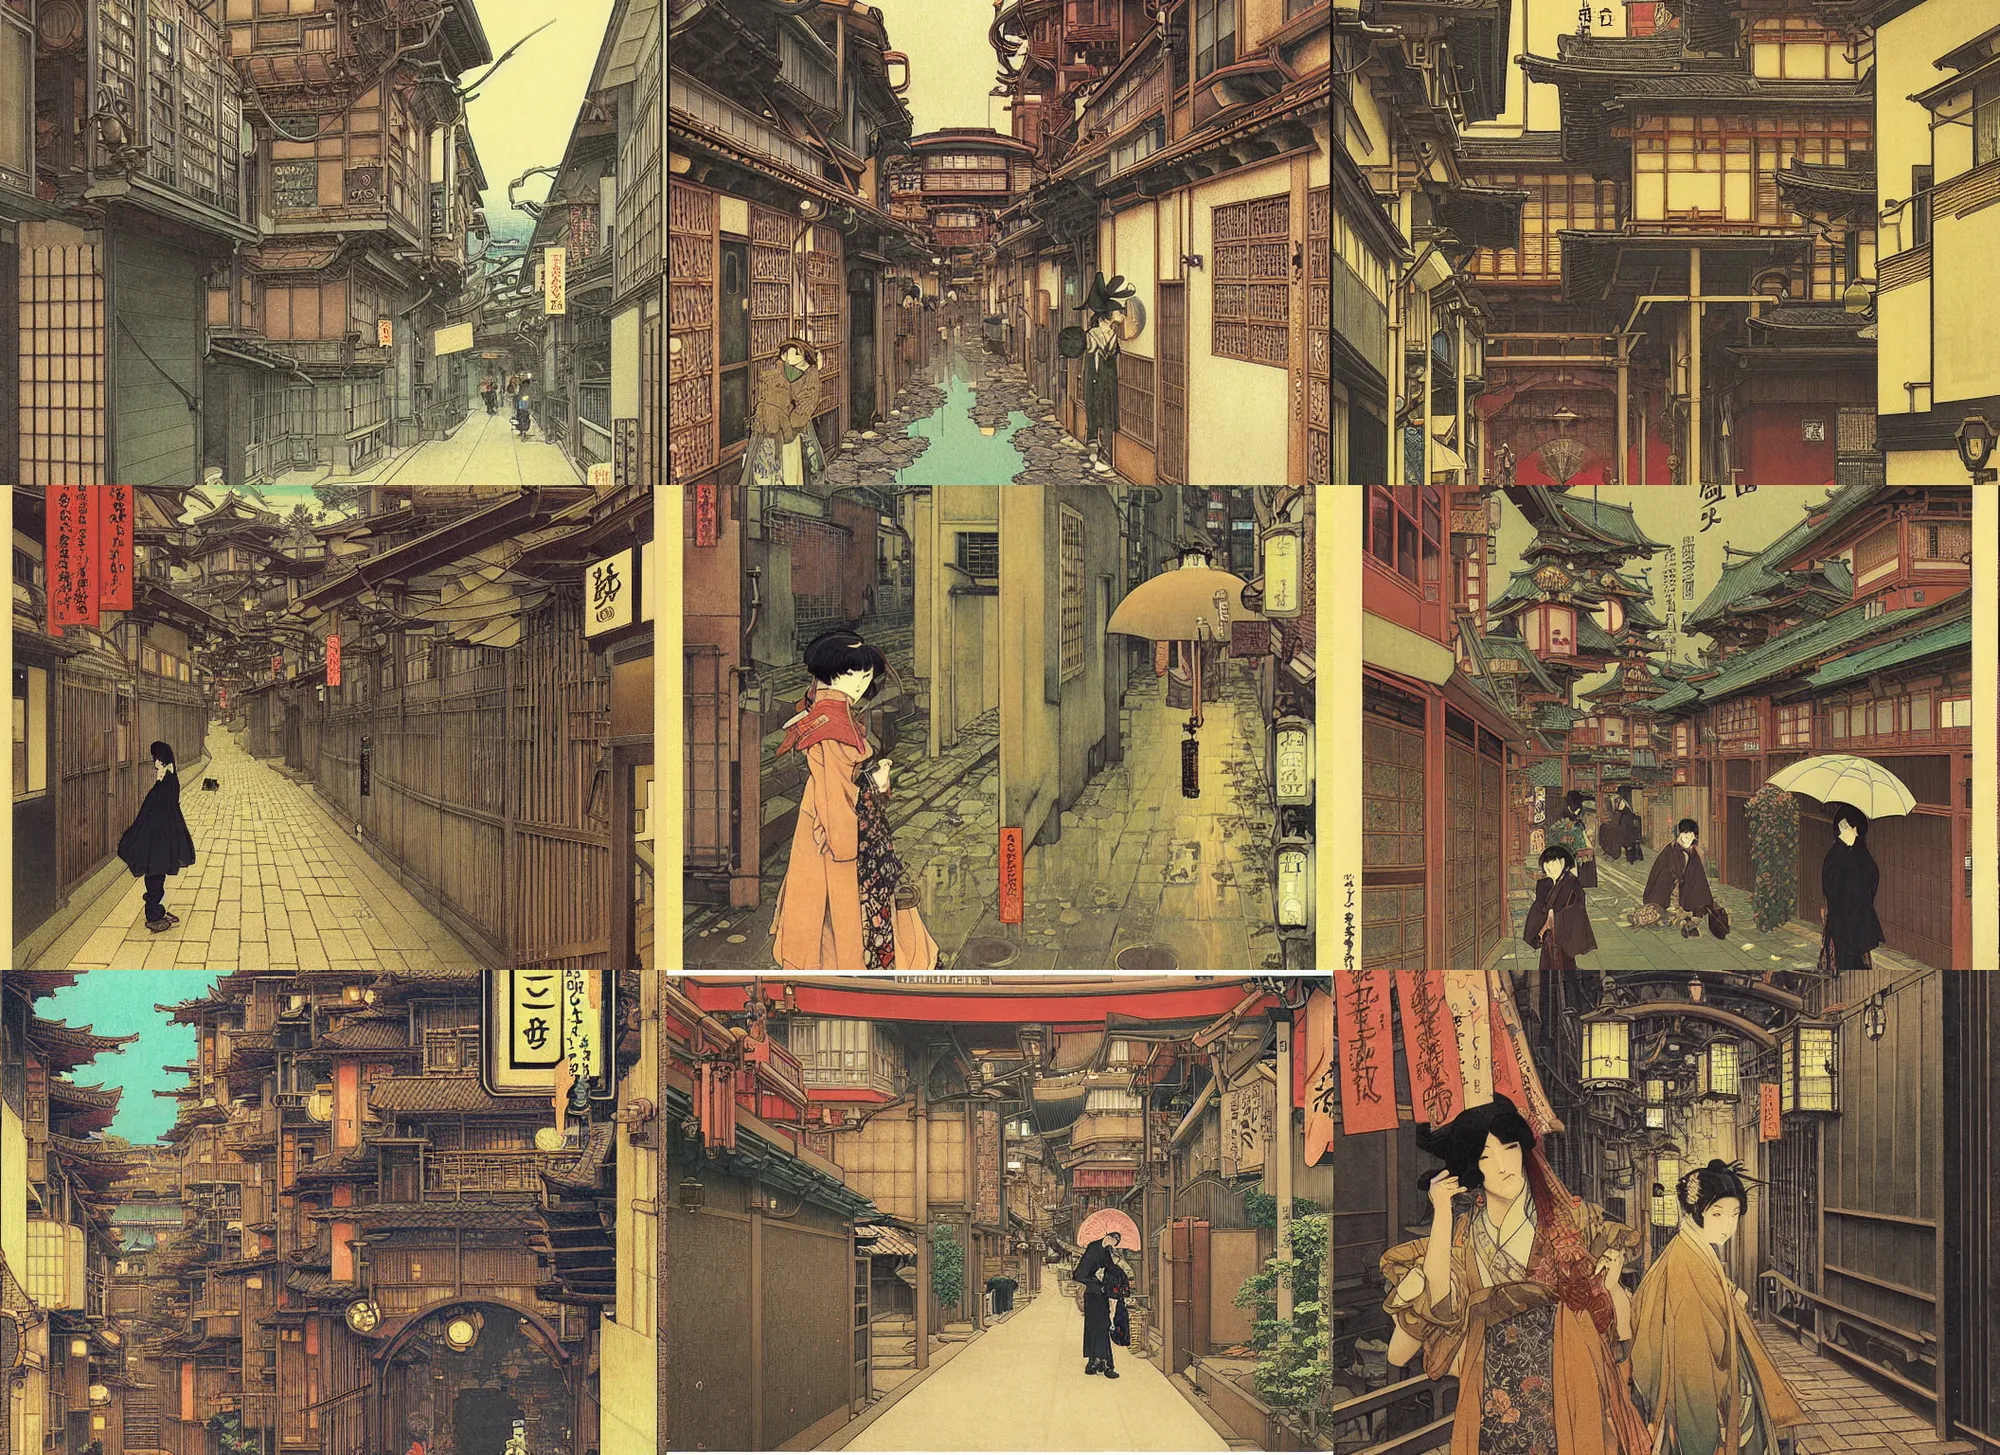 Prompt: a beautiful ukiyo painting of steampunk tokyo alleyway by hasui kawase, takato yomamoto, alphonse mucha